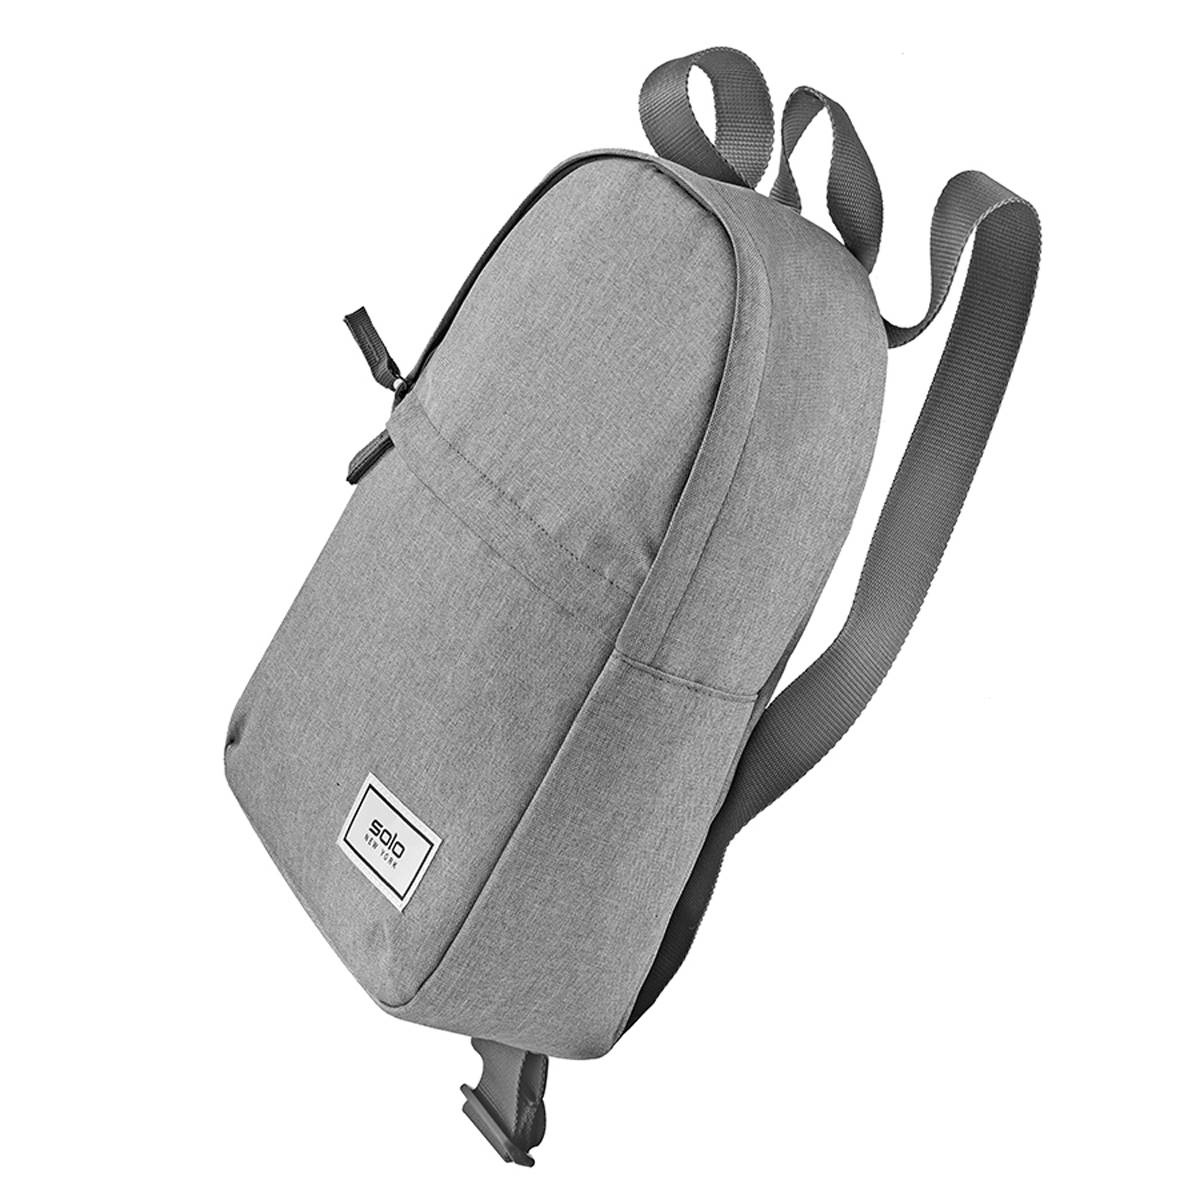 Solo NY Vive Mini Backpack